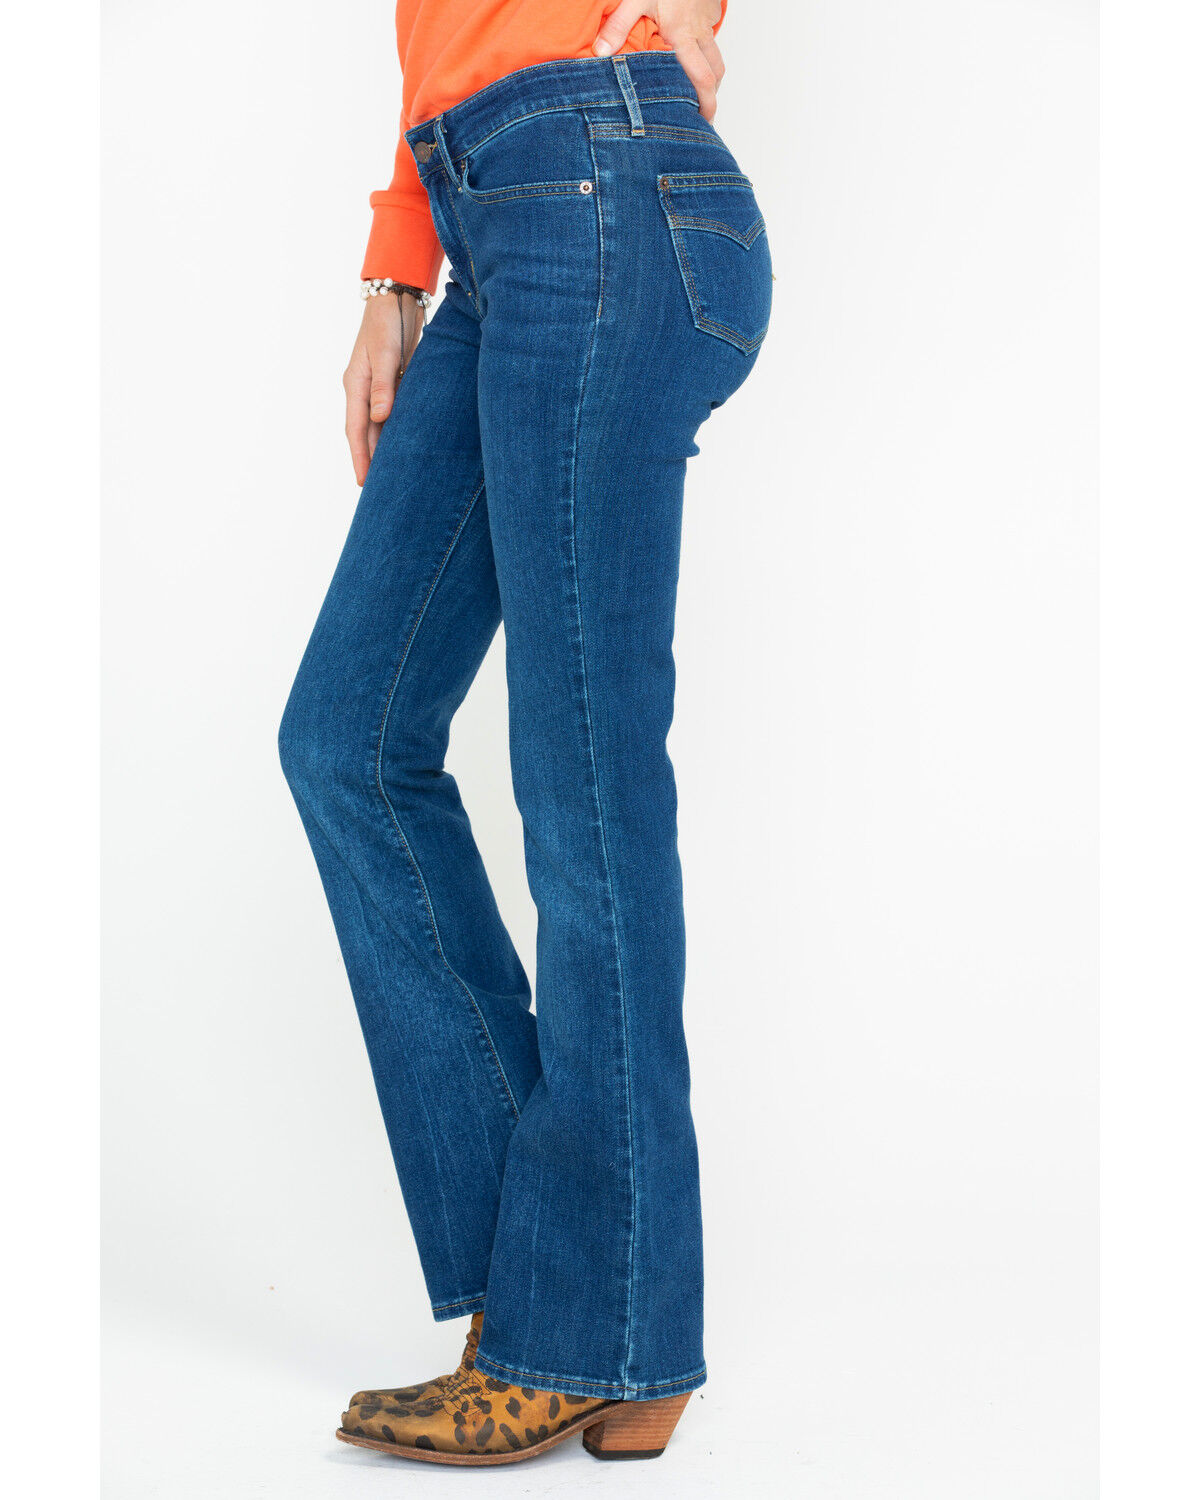 levi's 715 jeans